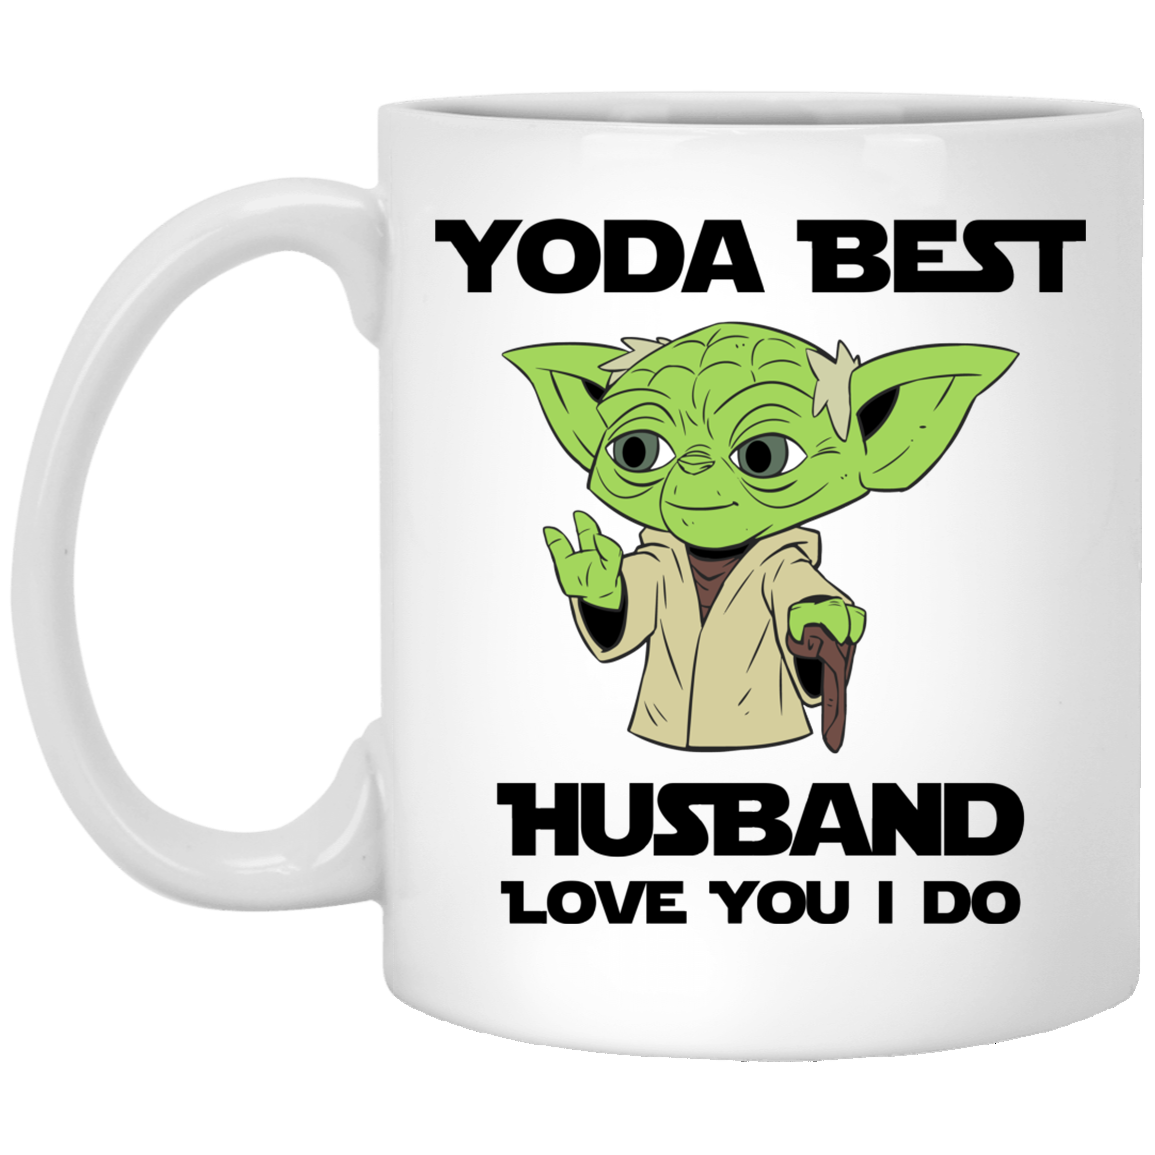 Yoda Best Husband - Love You I Do Mug